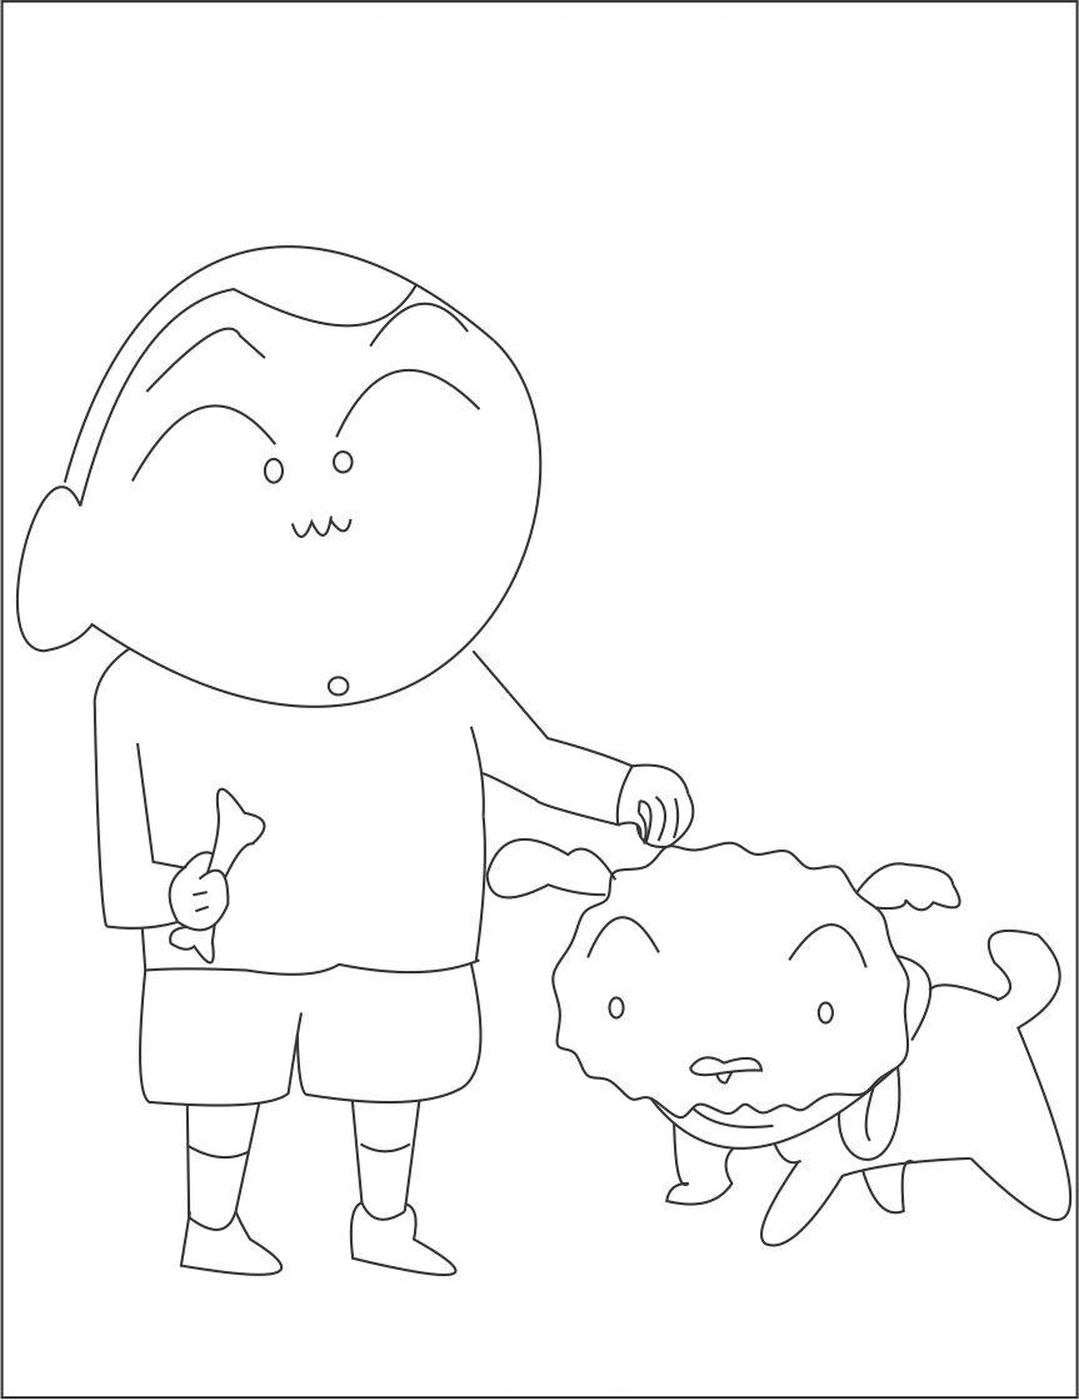 Tổng hợp các bức tranh tô màu Shin cậu bé bút chì cho bé